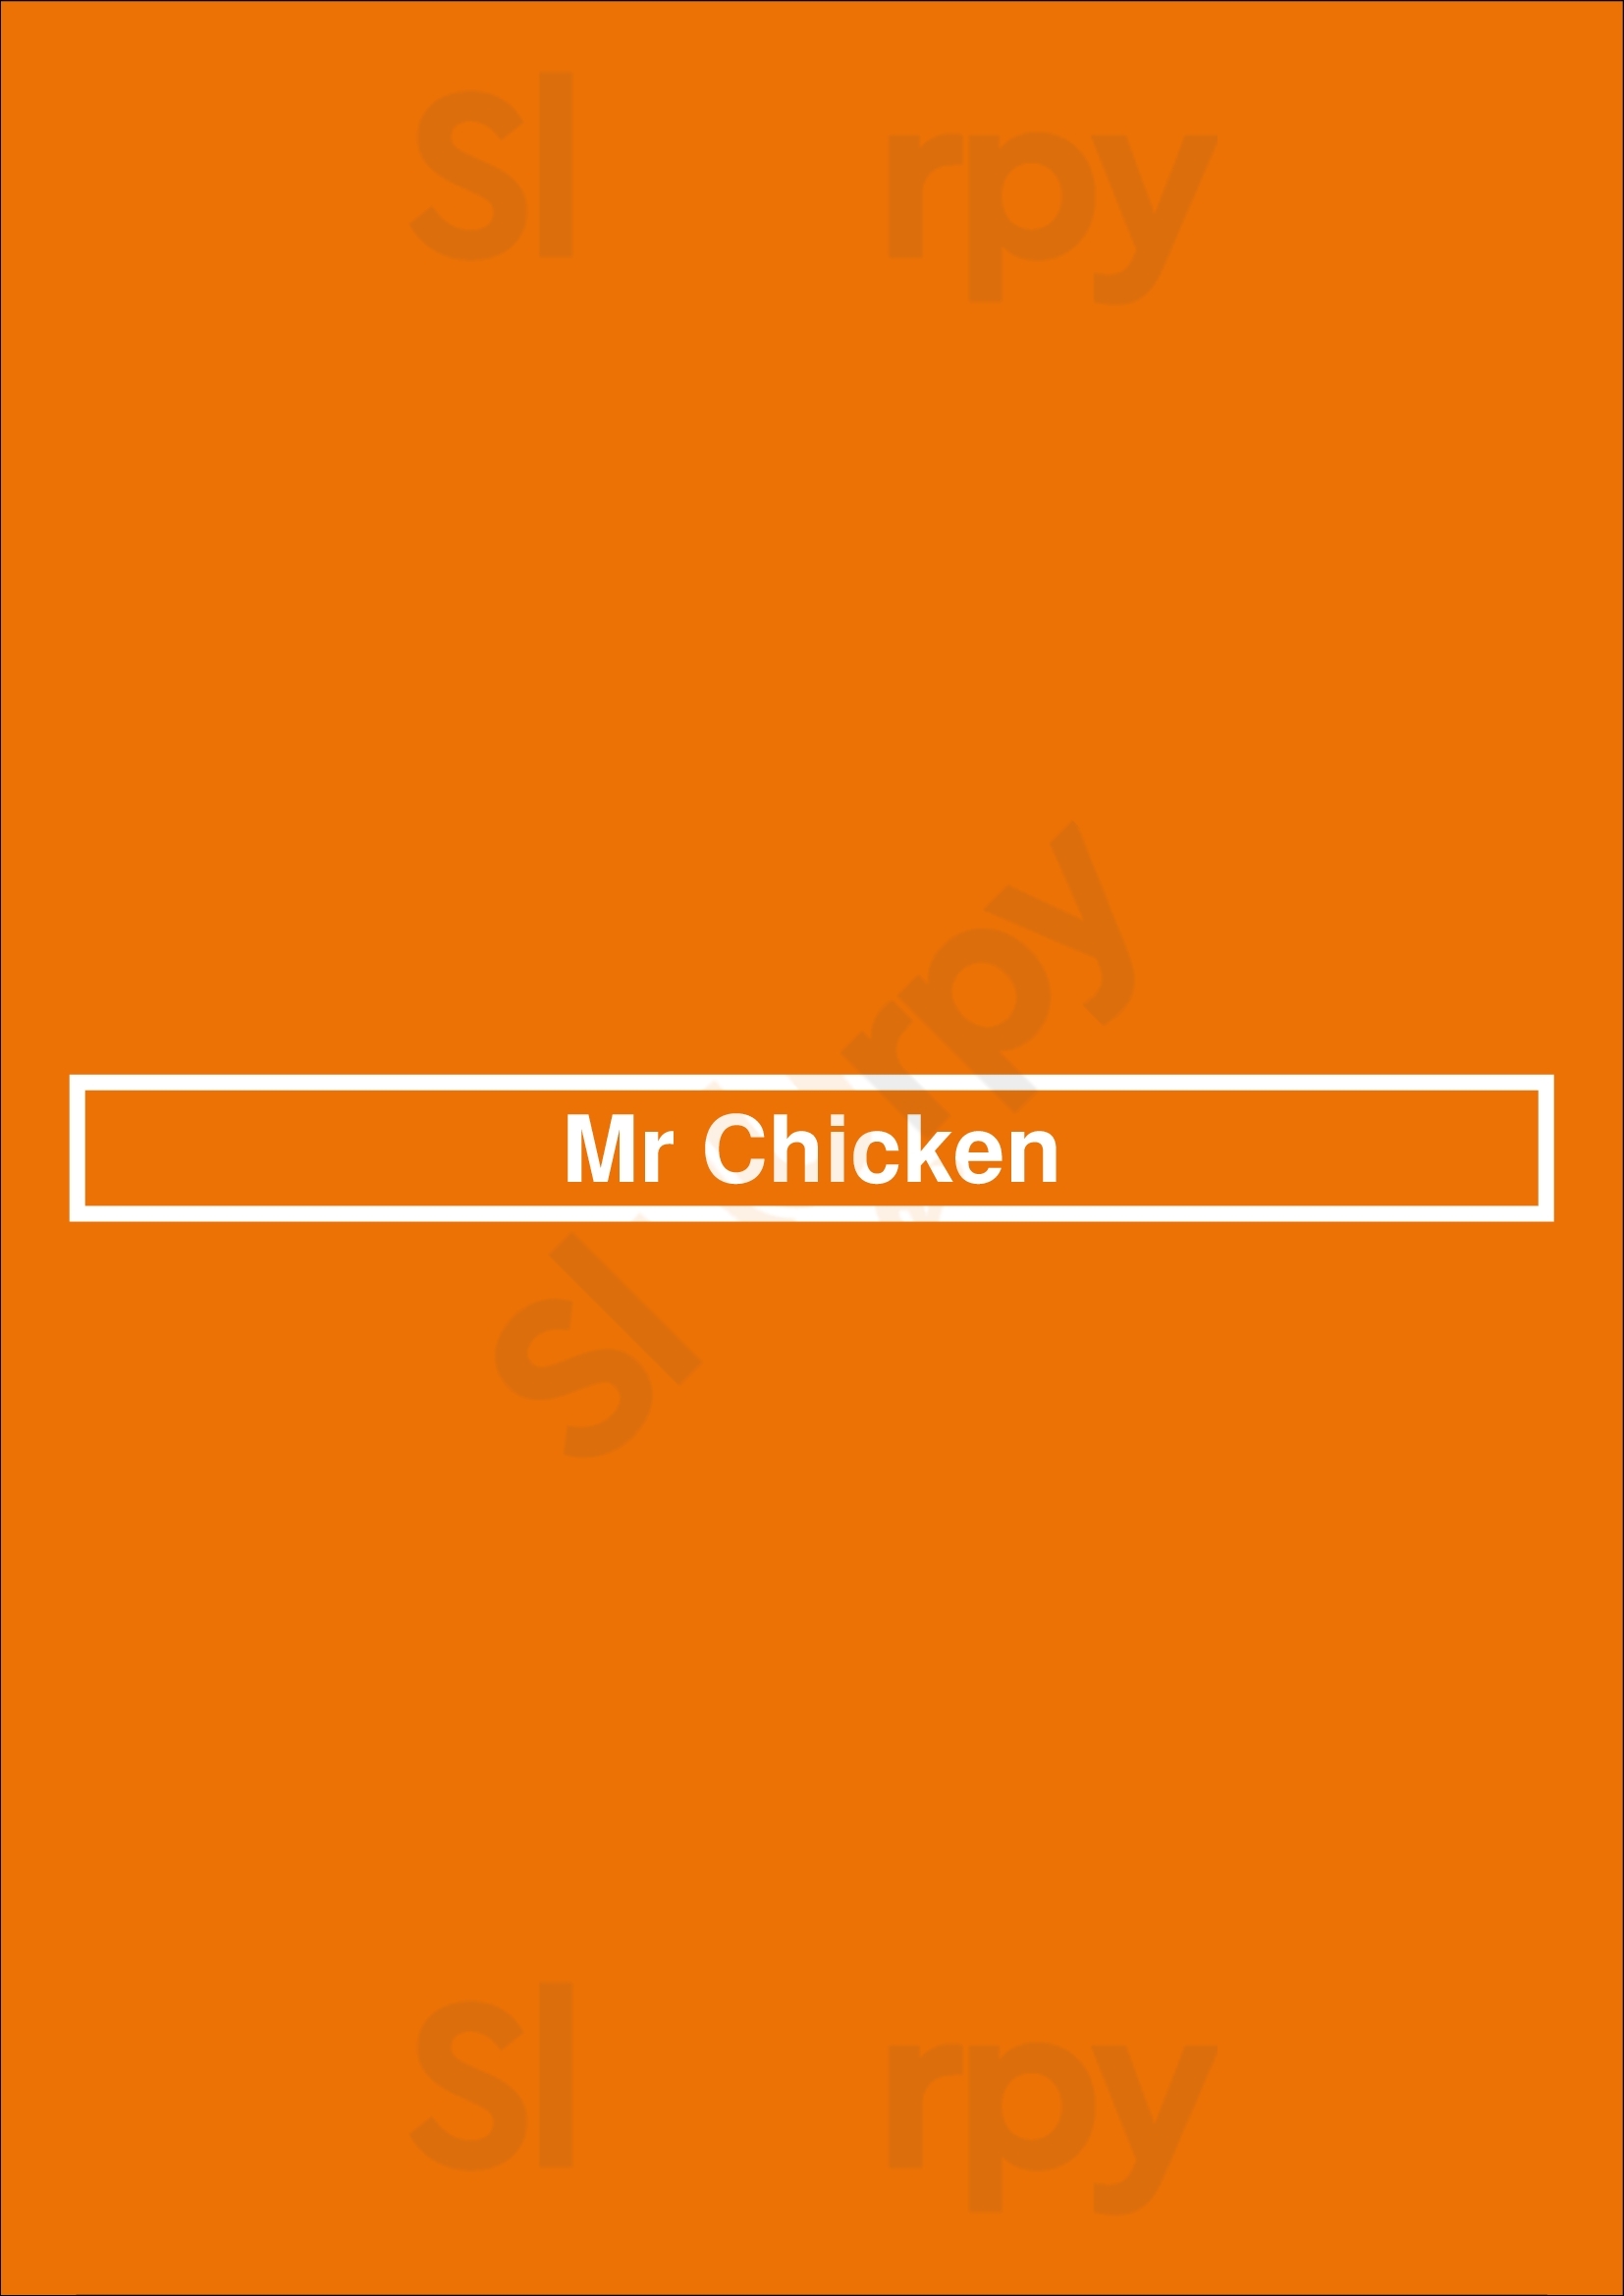 Mr Chicken Cleveland Menu - 1